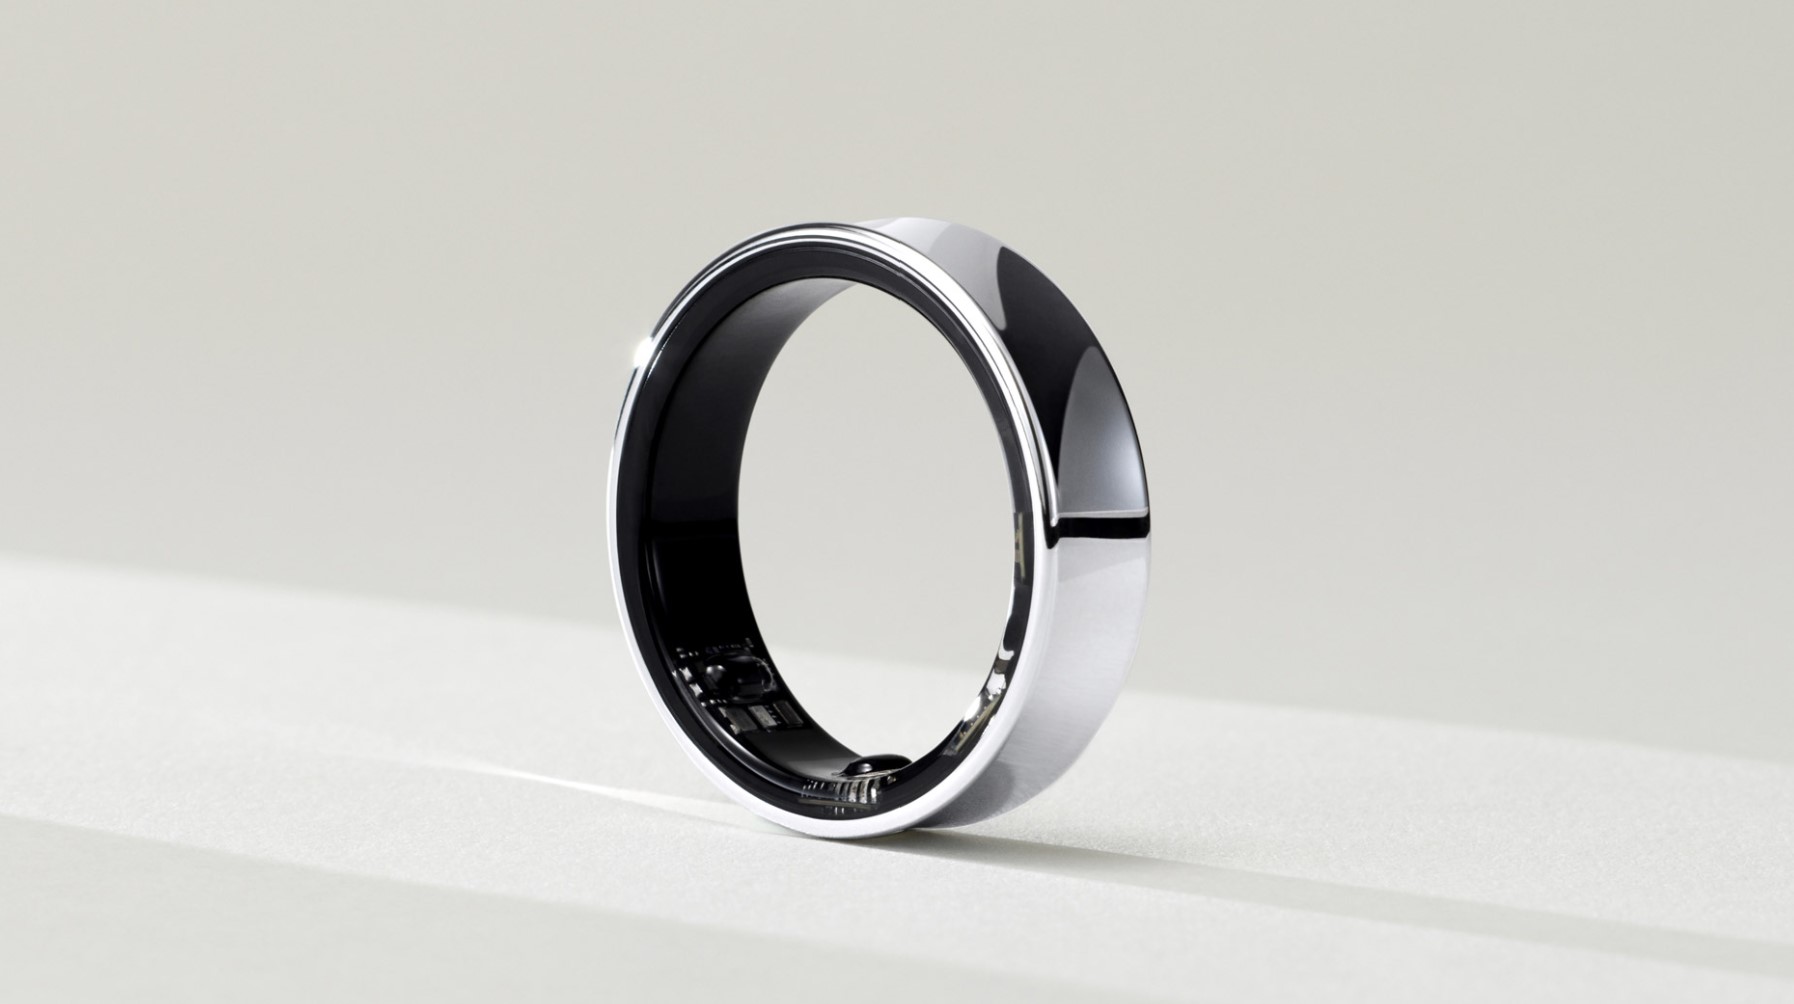 Giám đốc Samsung: Galaxy Ring sẽ là thứ thu hút người dùng iPhone đổi điện thoại- Ảnh 1.